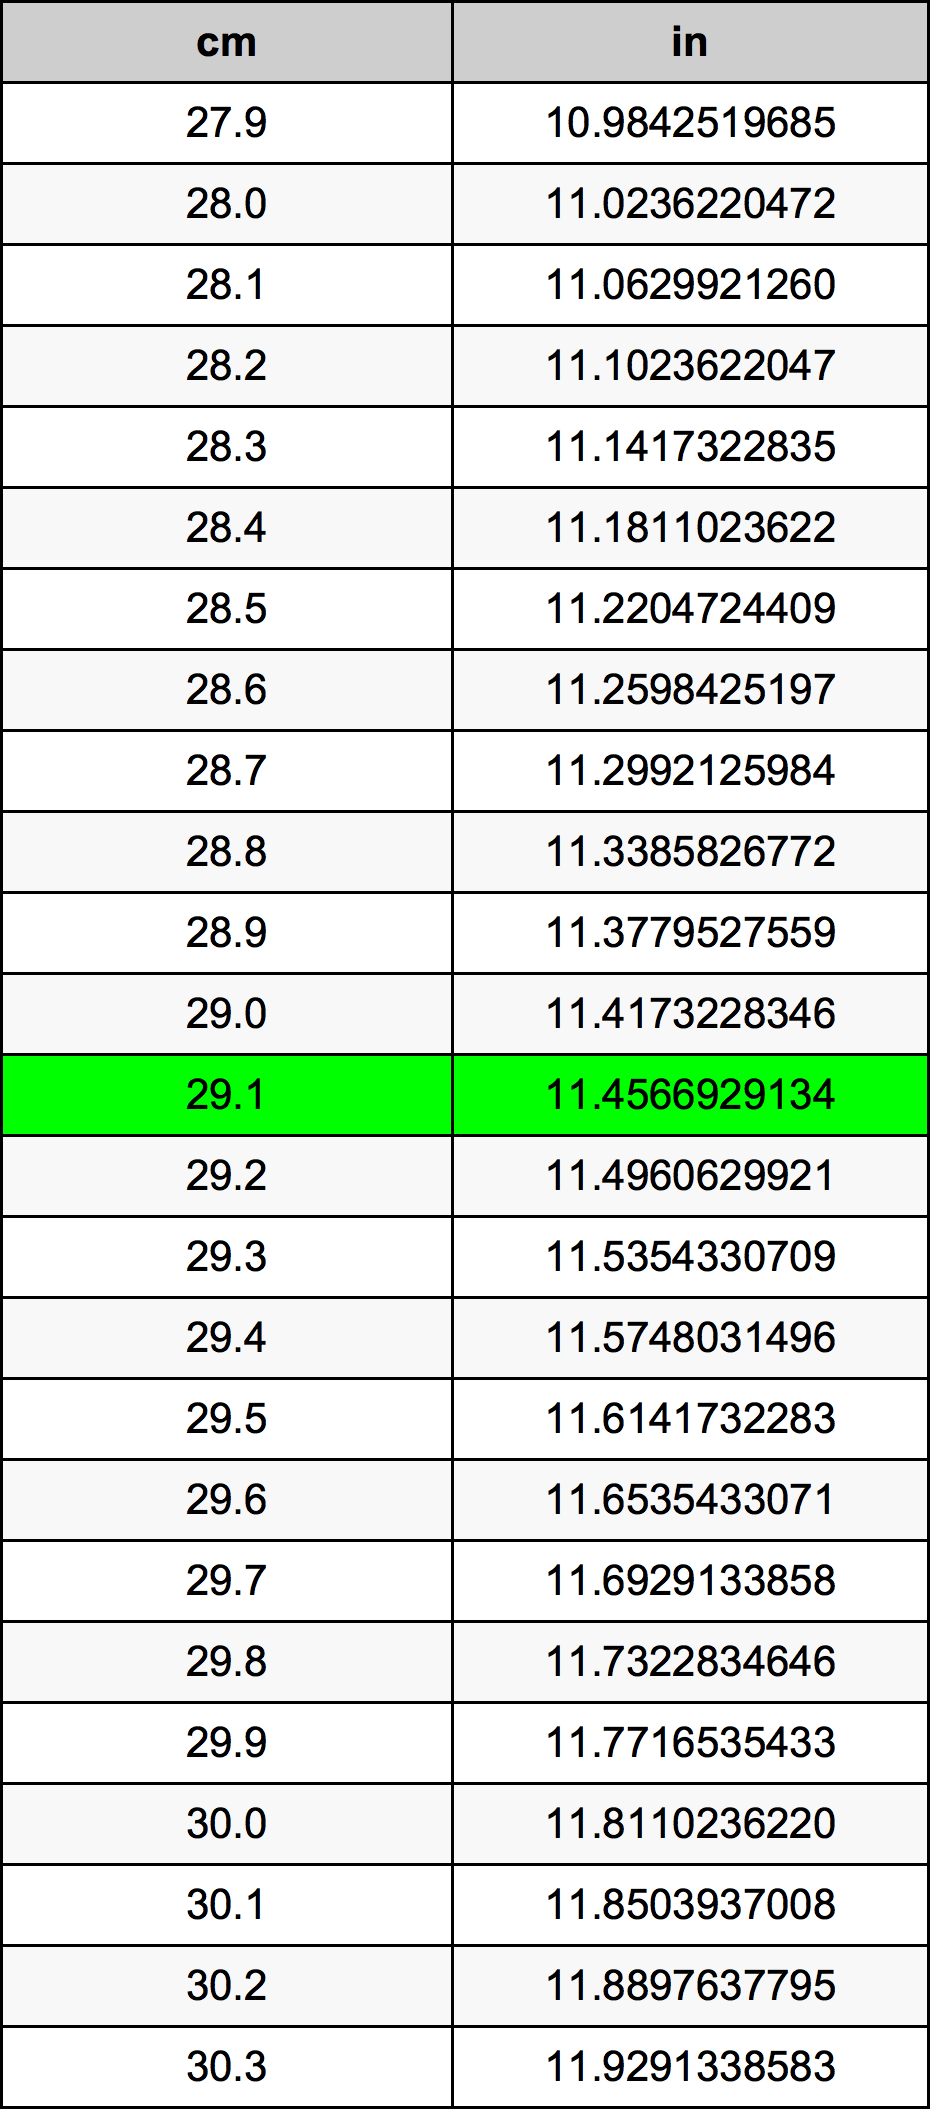 29.1 Centiméter átszámítási táblázat